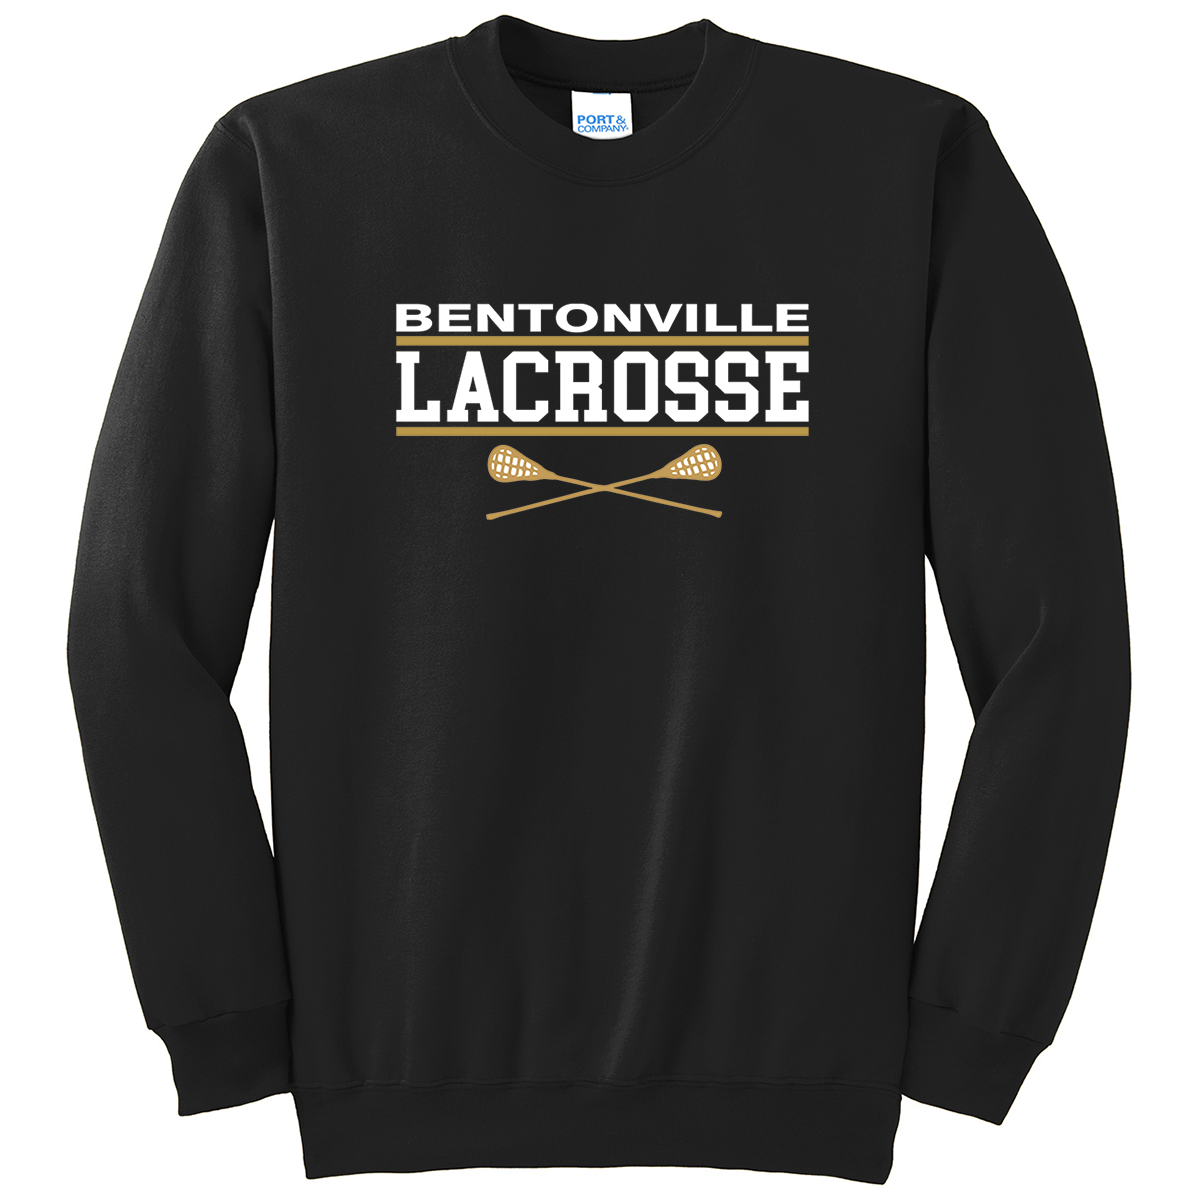 Bentonville Lacrosse Crew Neck Sweater